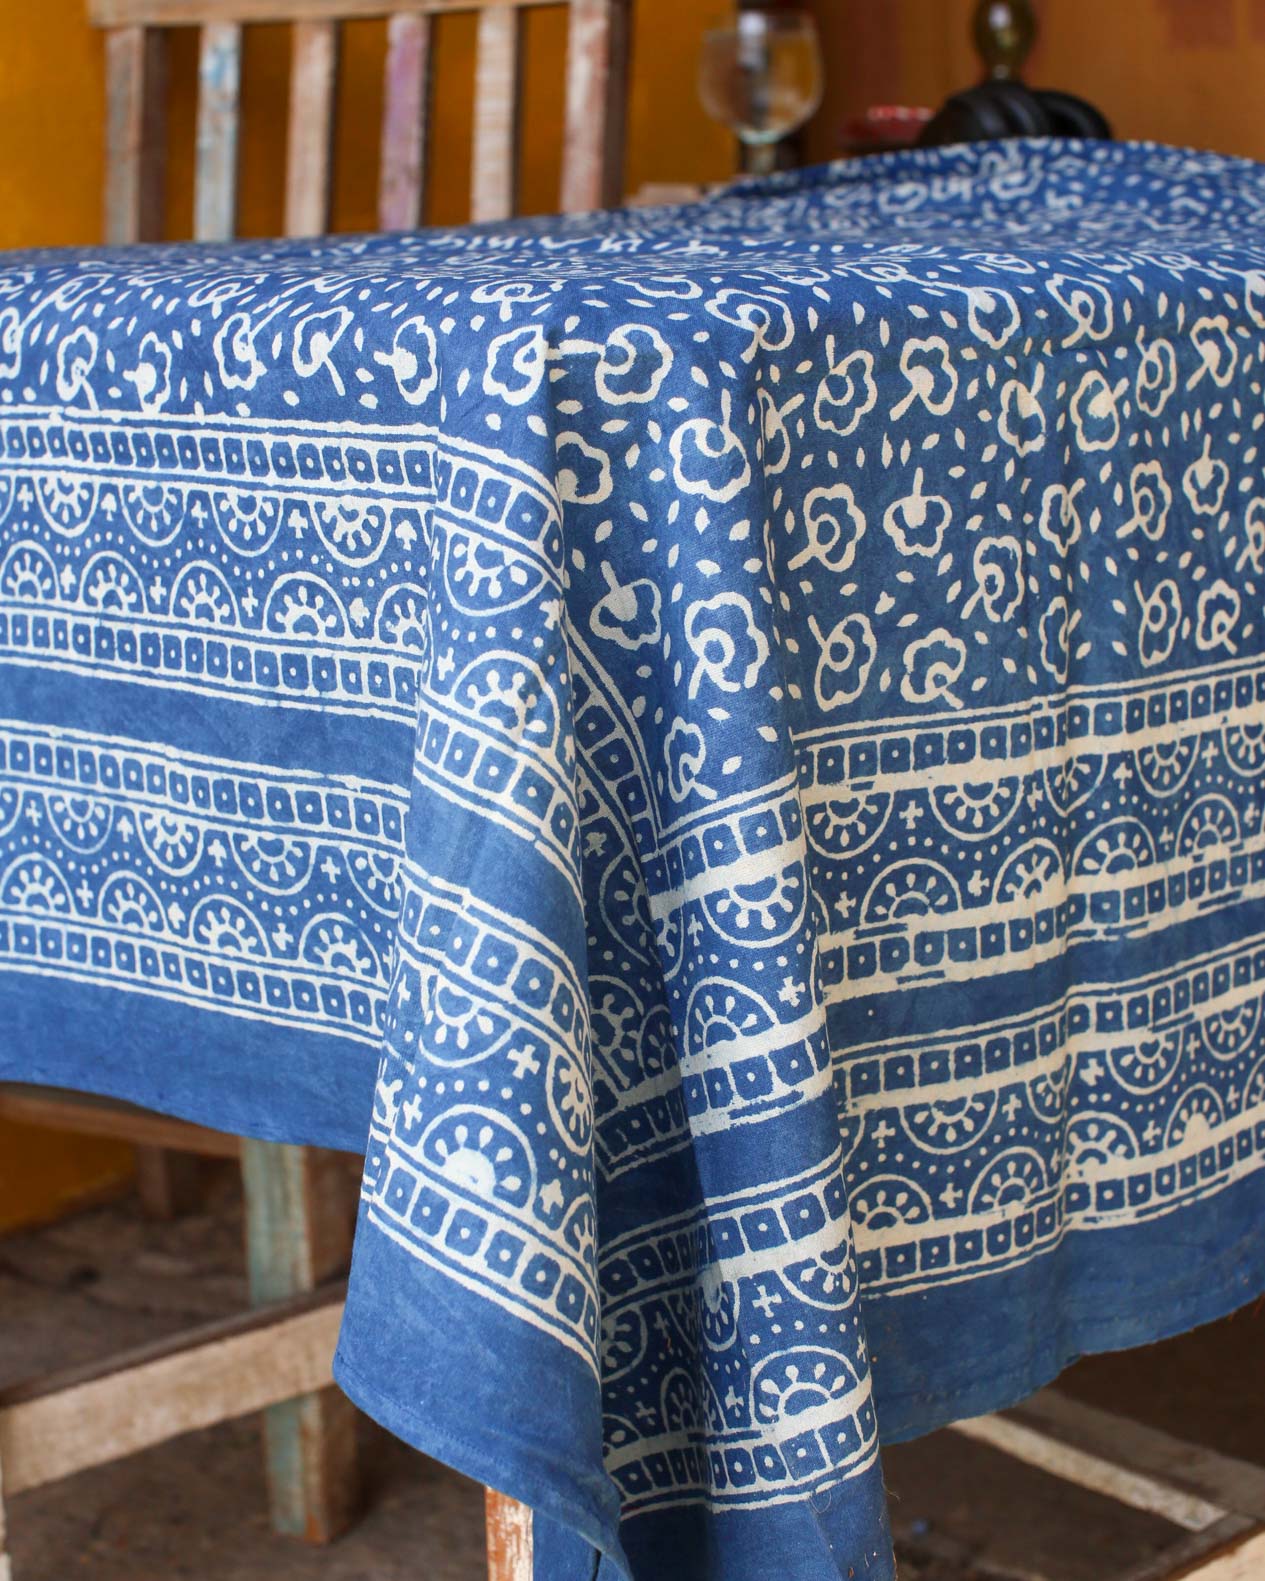 Cotton Indigo Print Tablecloth 150 x 220cm